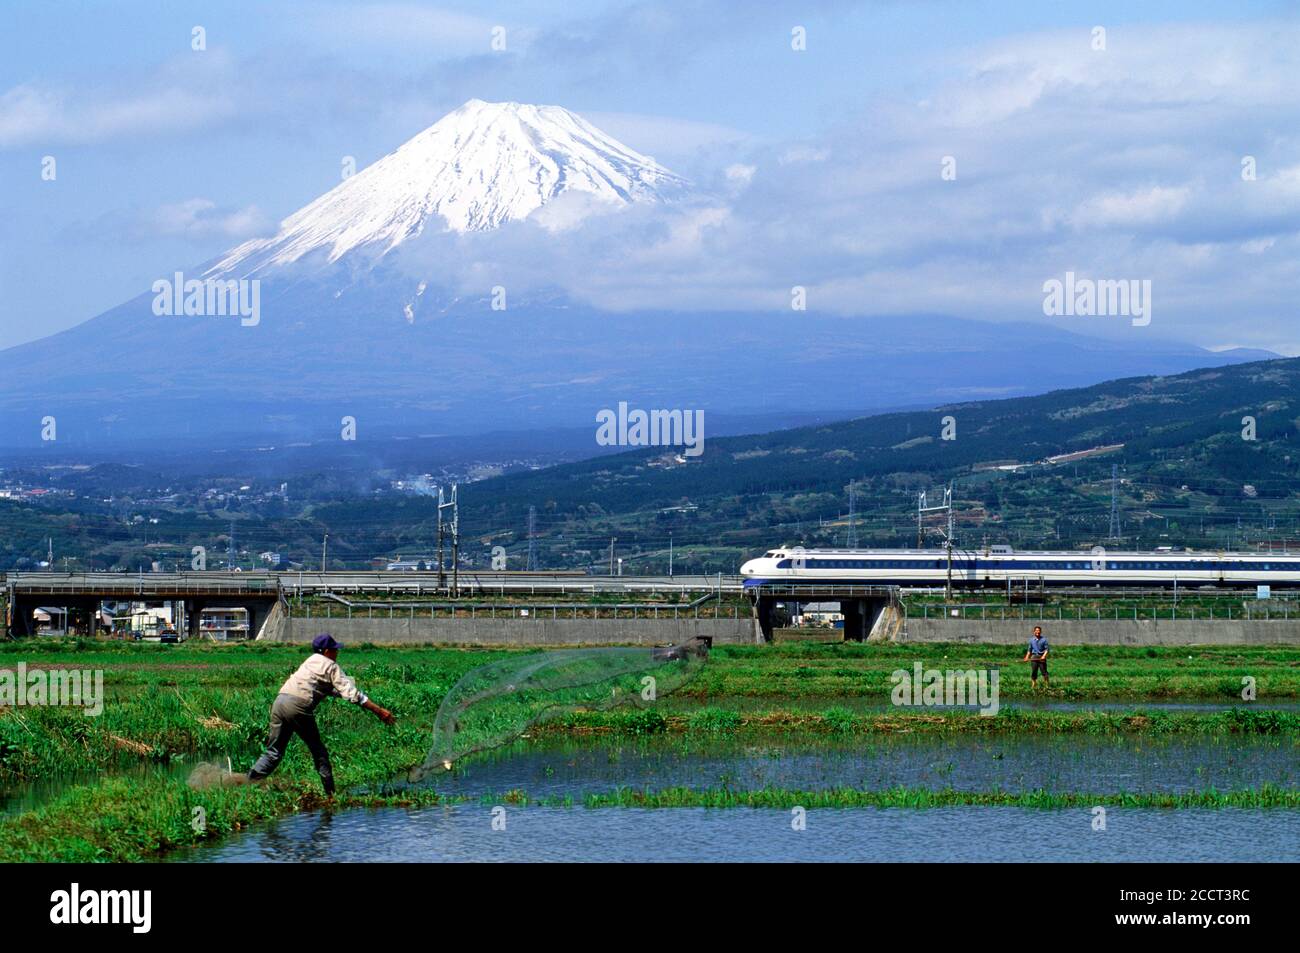 Train à grande vitesse Shinkansen passant des fleurs et des rizières et des fermiers tubage de filet de poisson dans un paddy de riz sous la neige recouverte Mont Fuji Banque D'Images